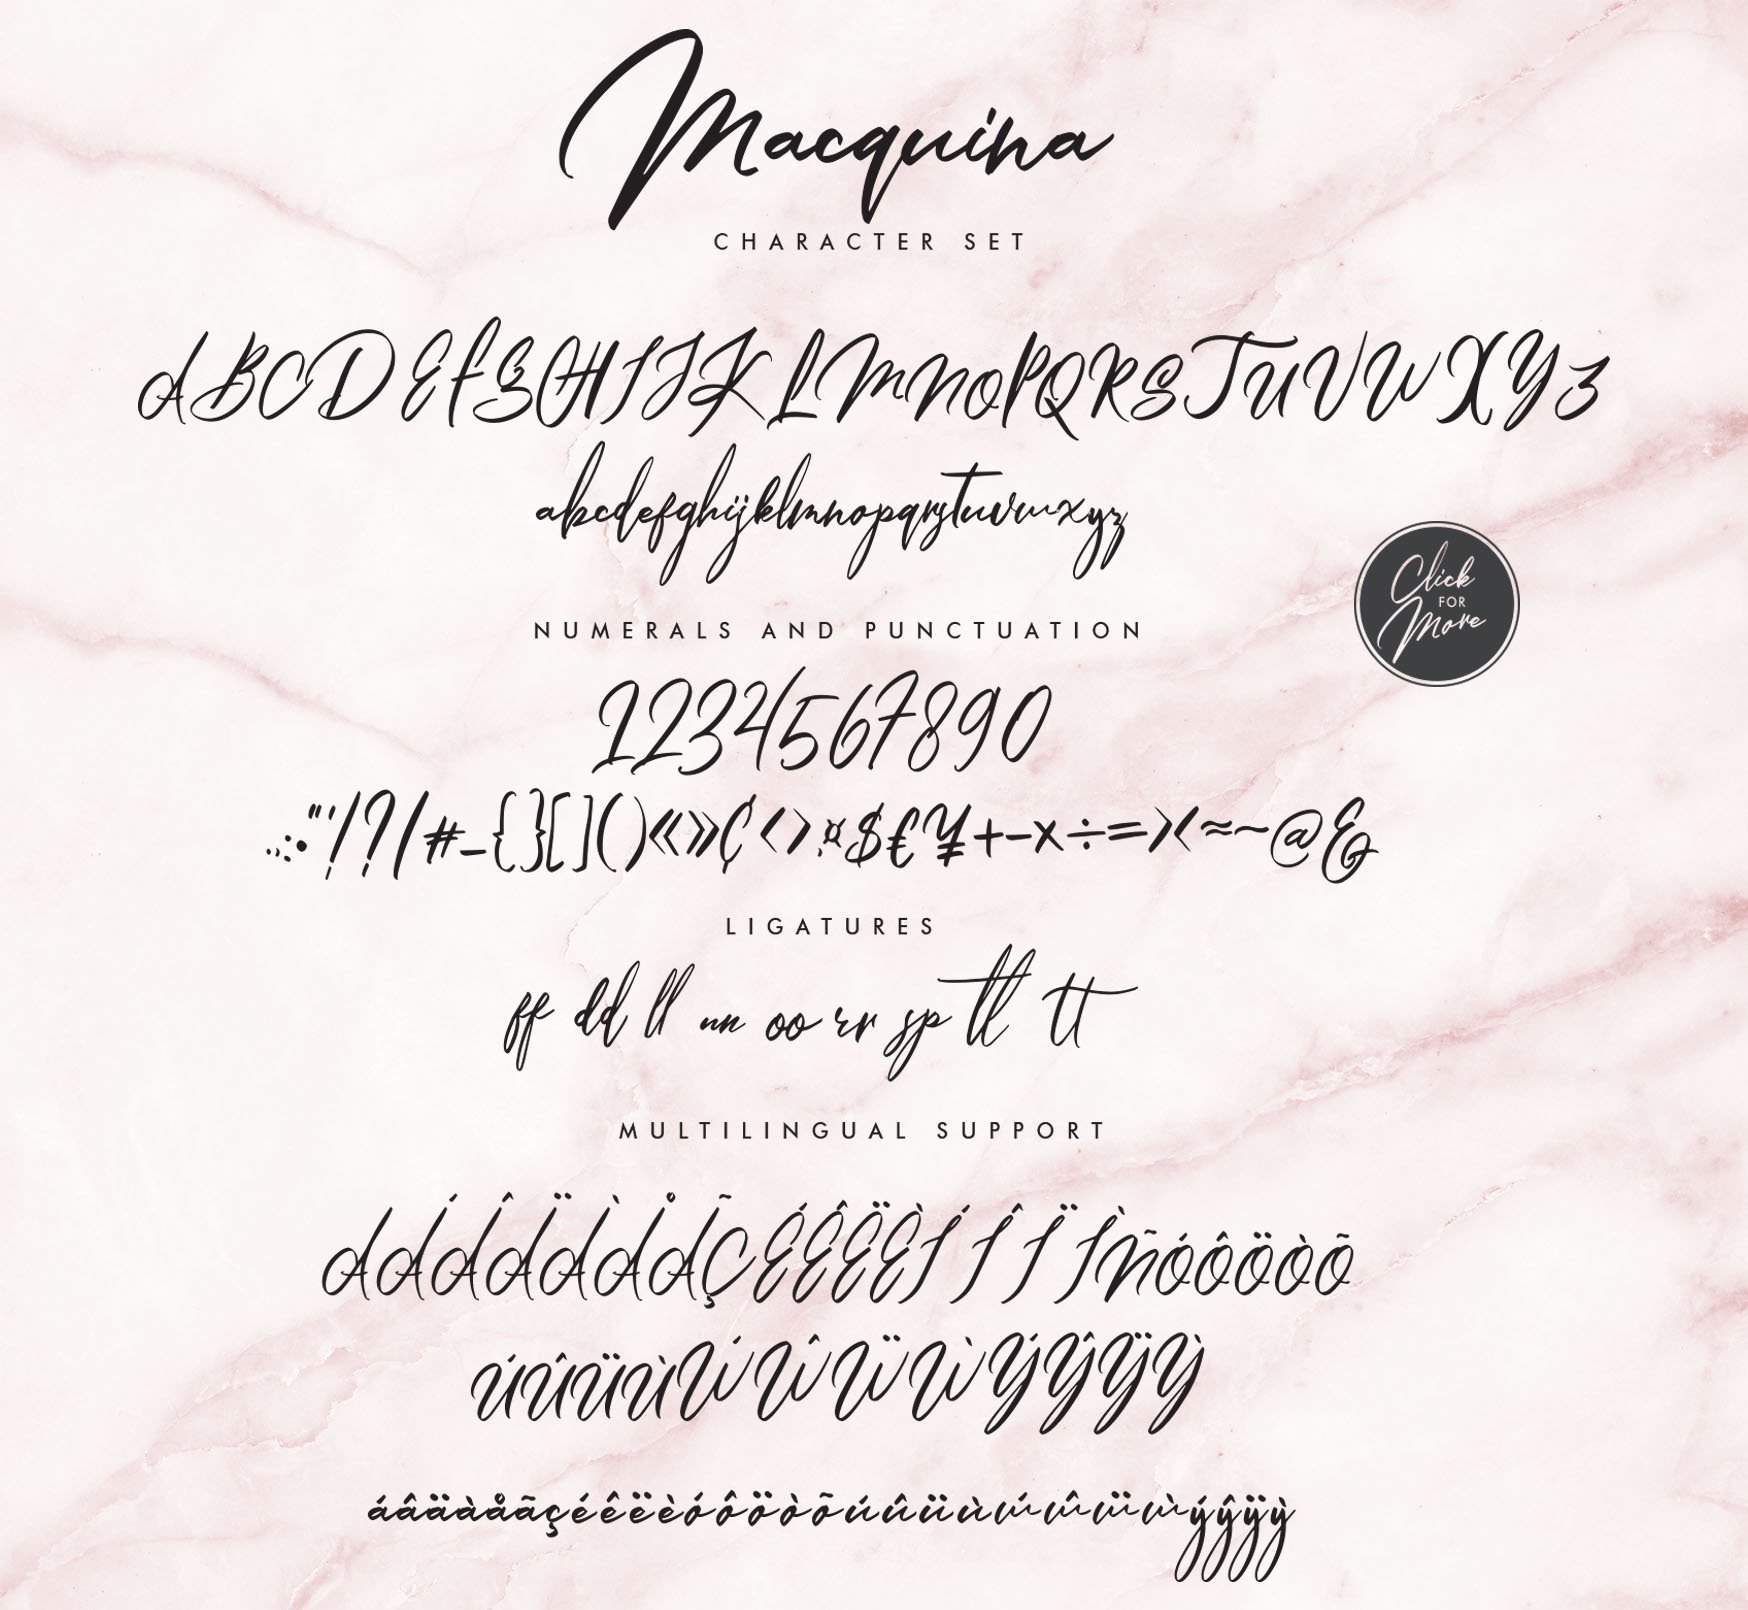 Macquina Script